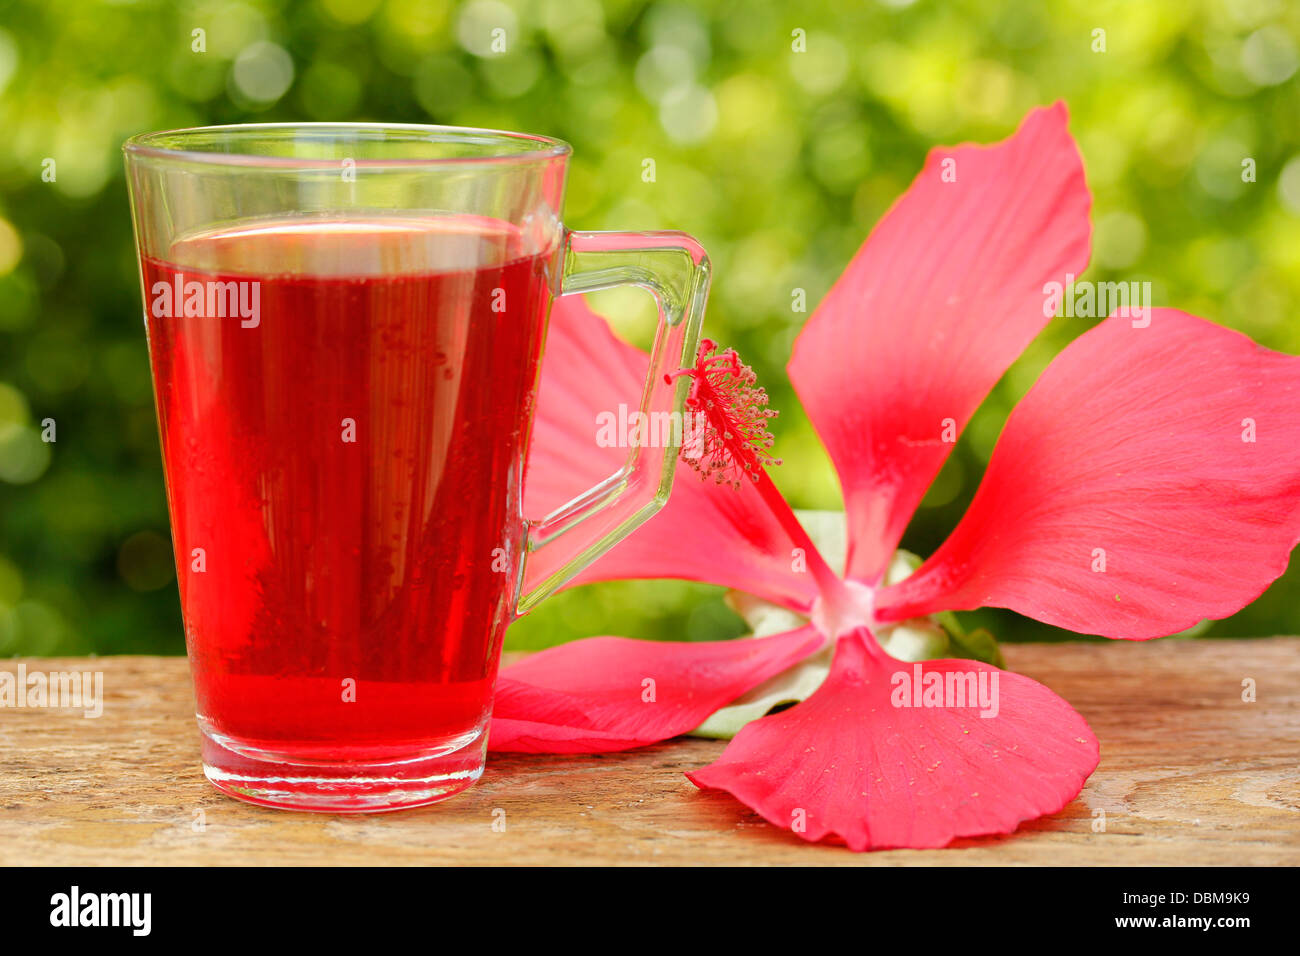 Bissap Hibiscus Juice